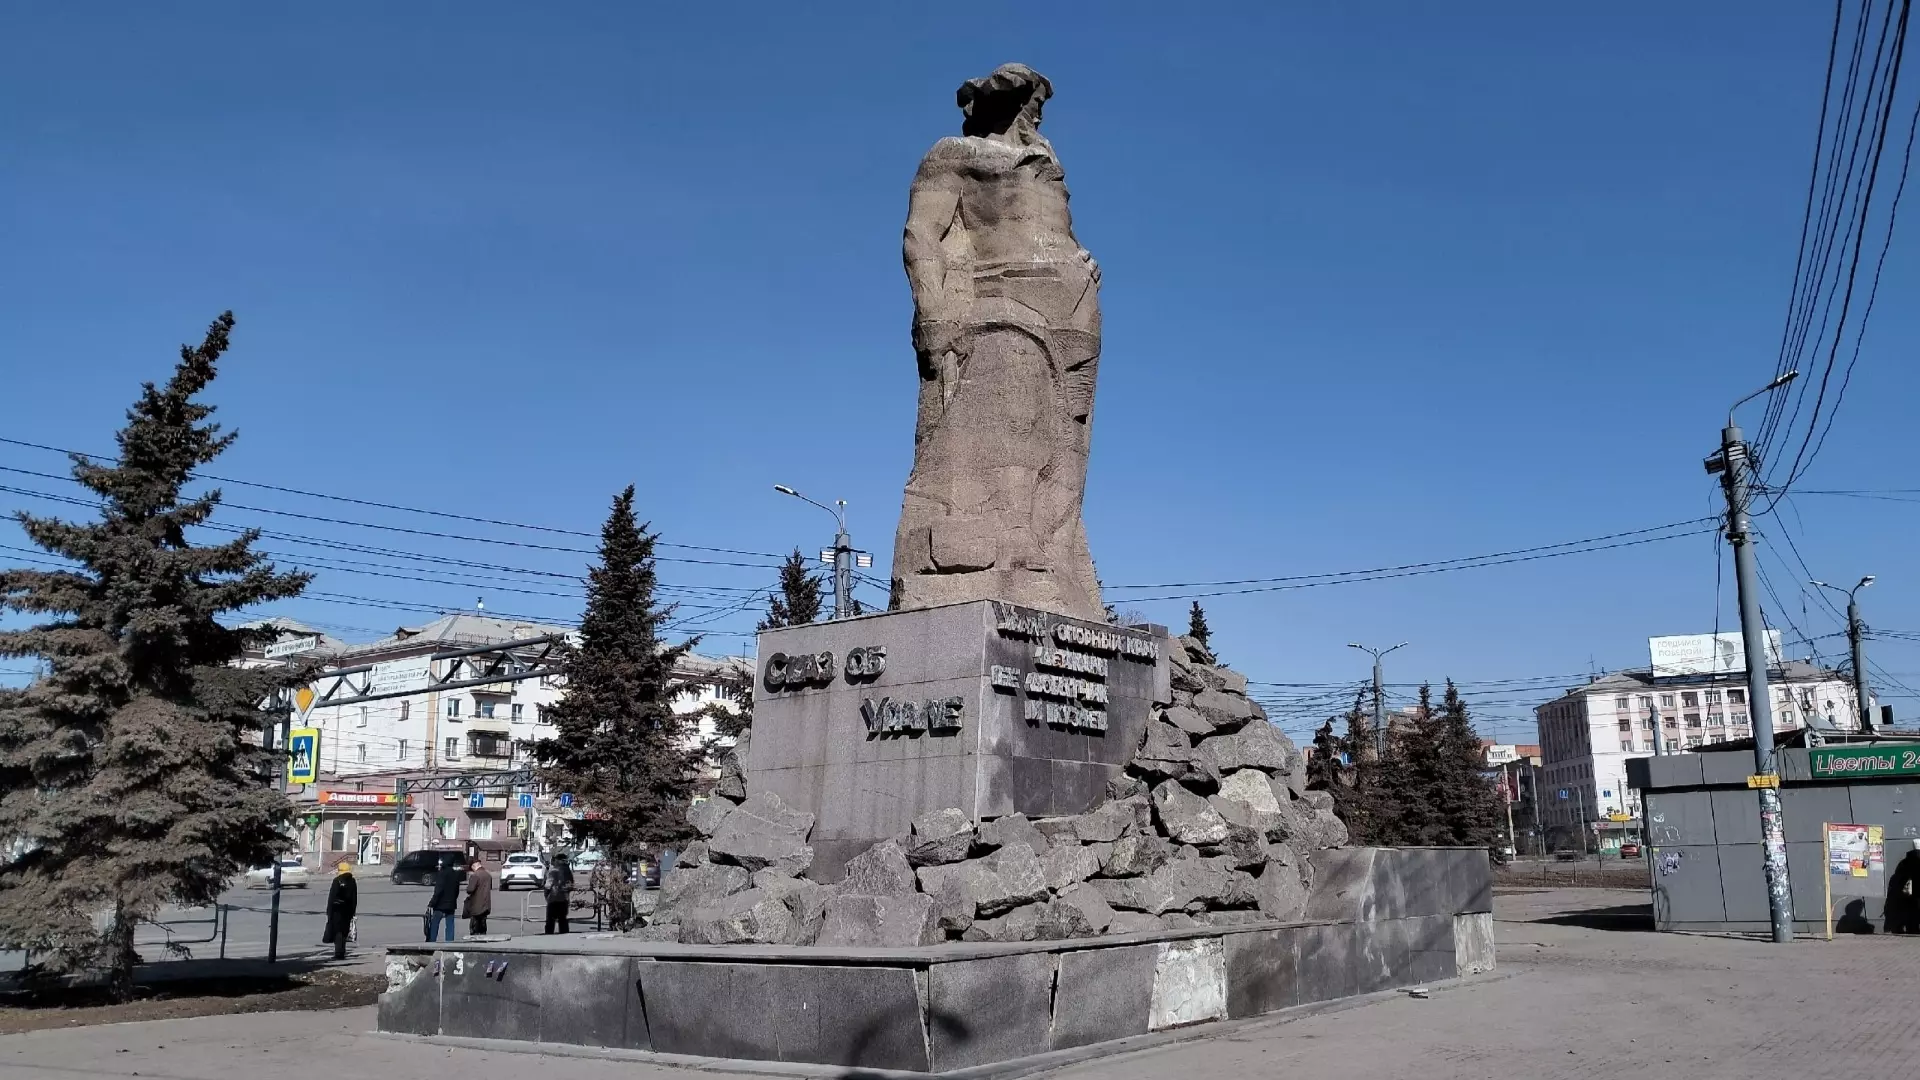 Памятник «Сказ об Урале» изображен на новой банкноте номиналом в 5000 рублей